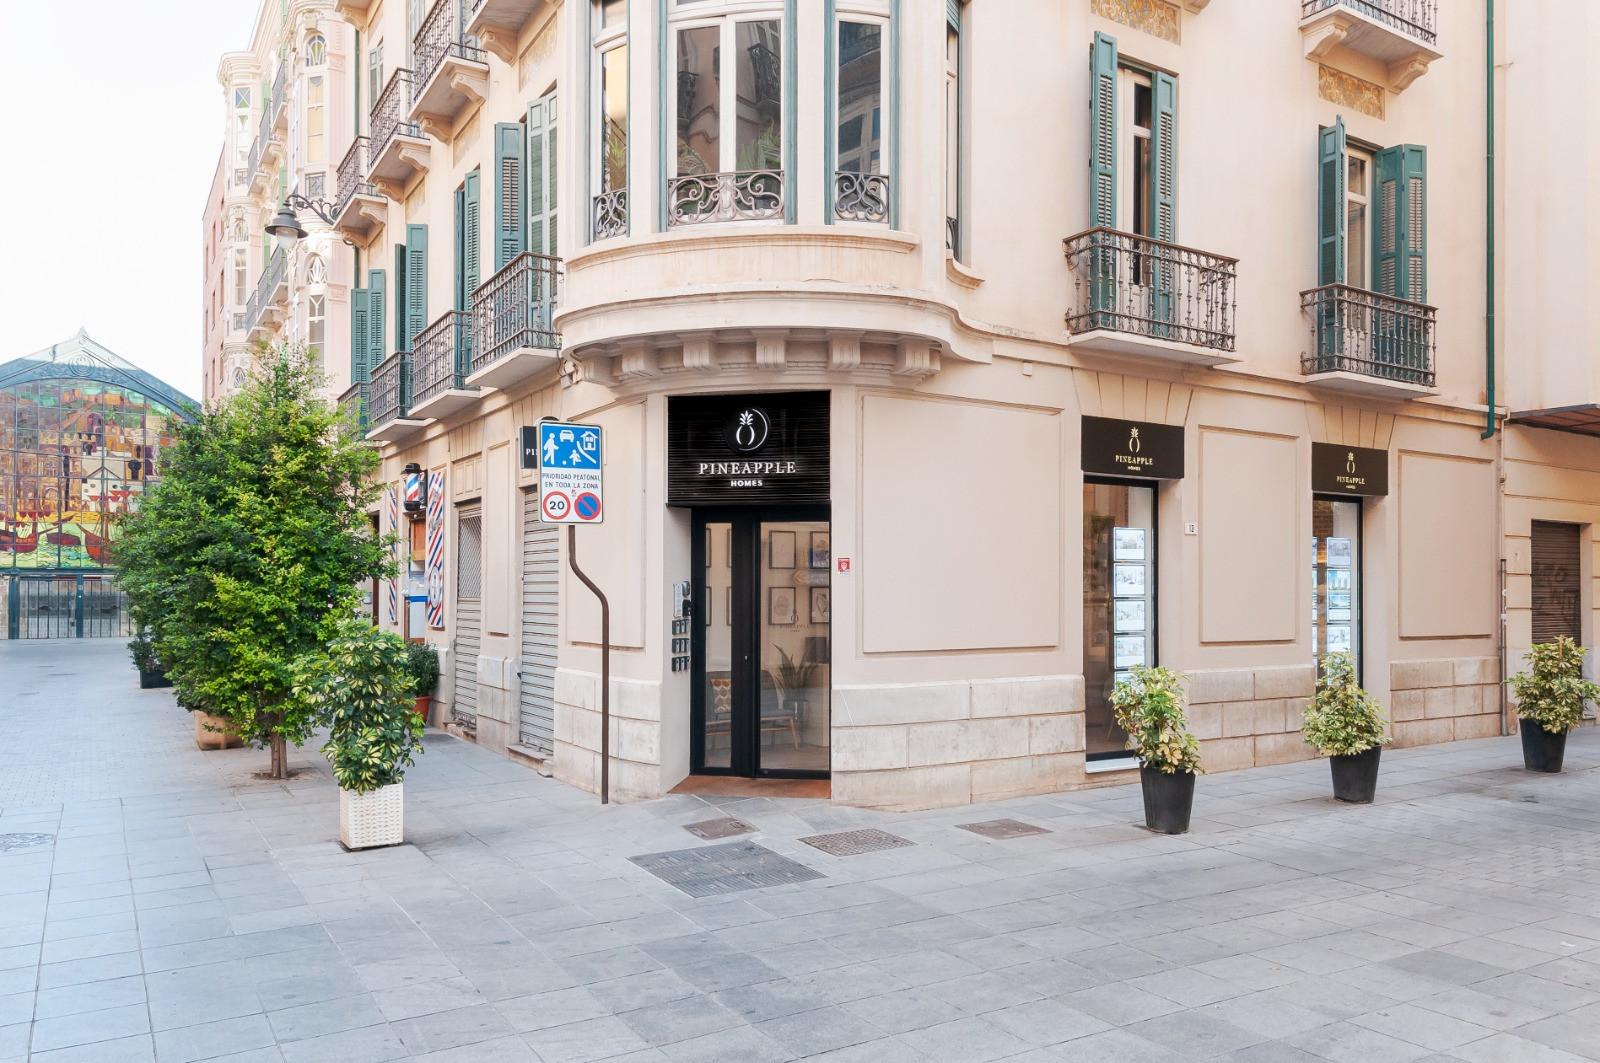 Penthouse unter Verkauf unter Malaga